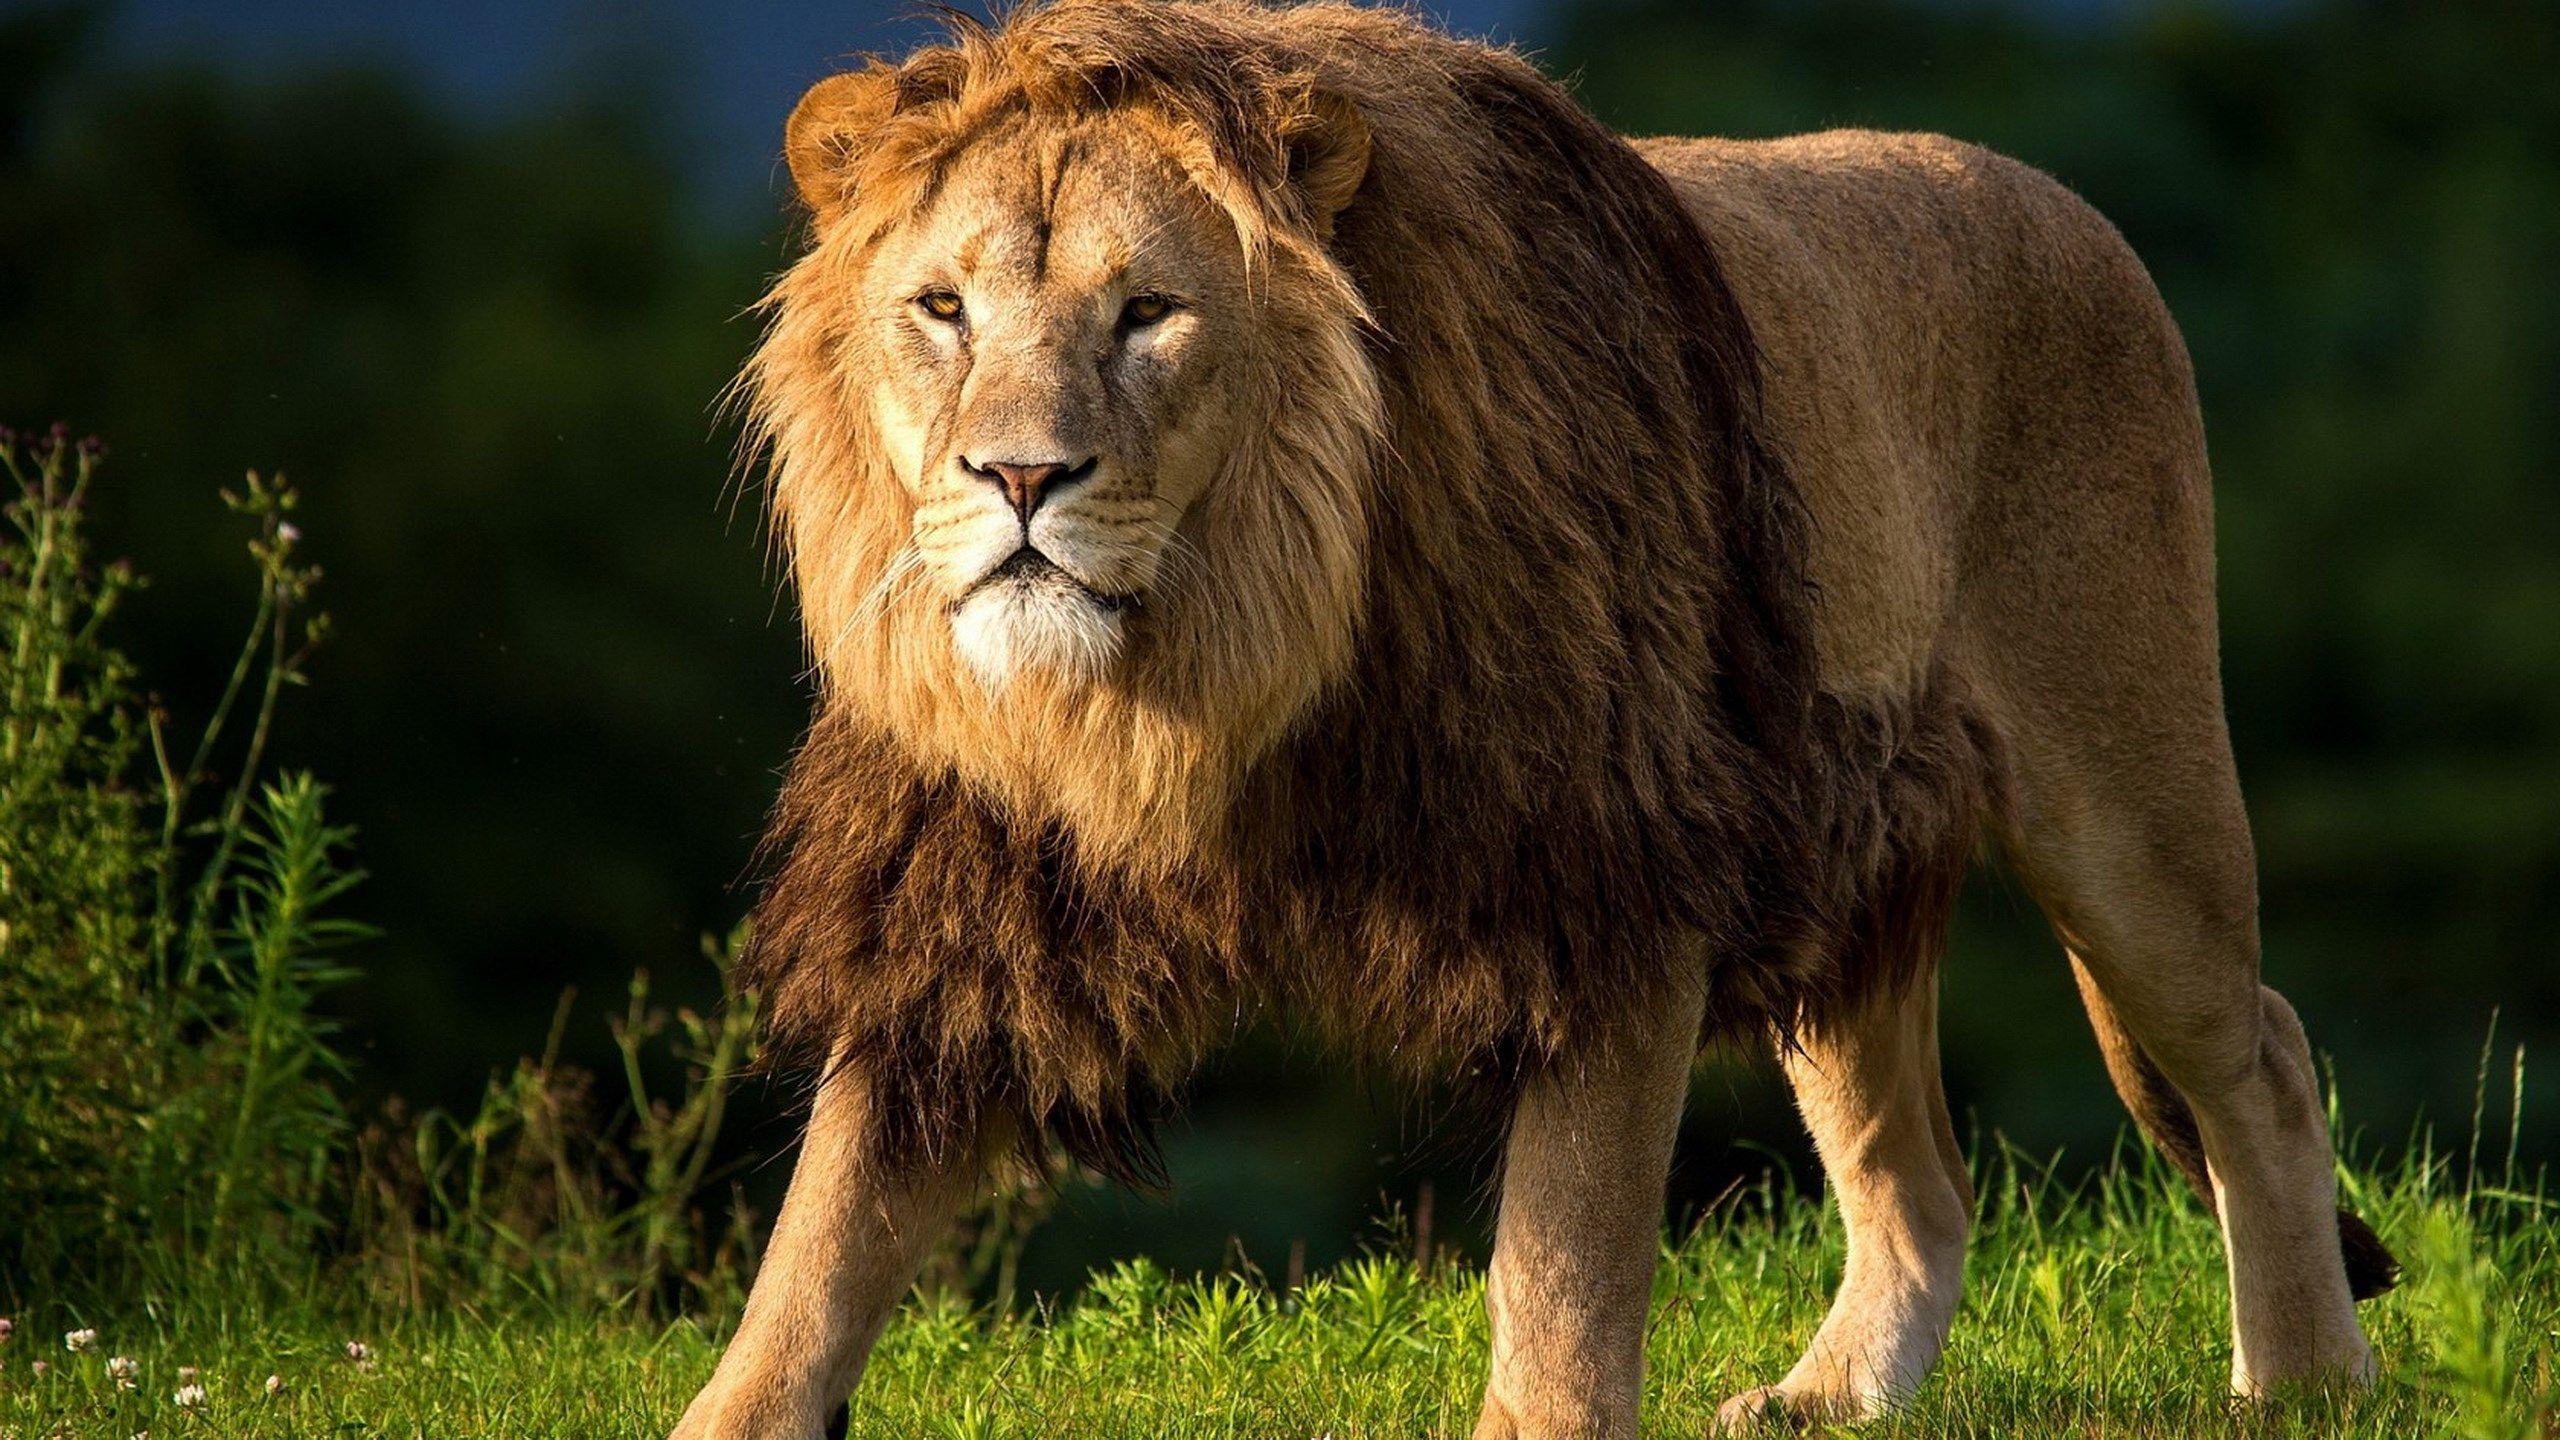 2560 x 1440 · jpeg - big lion image hd | Lion hd wallpaper, Lion images, Lion pictures